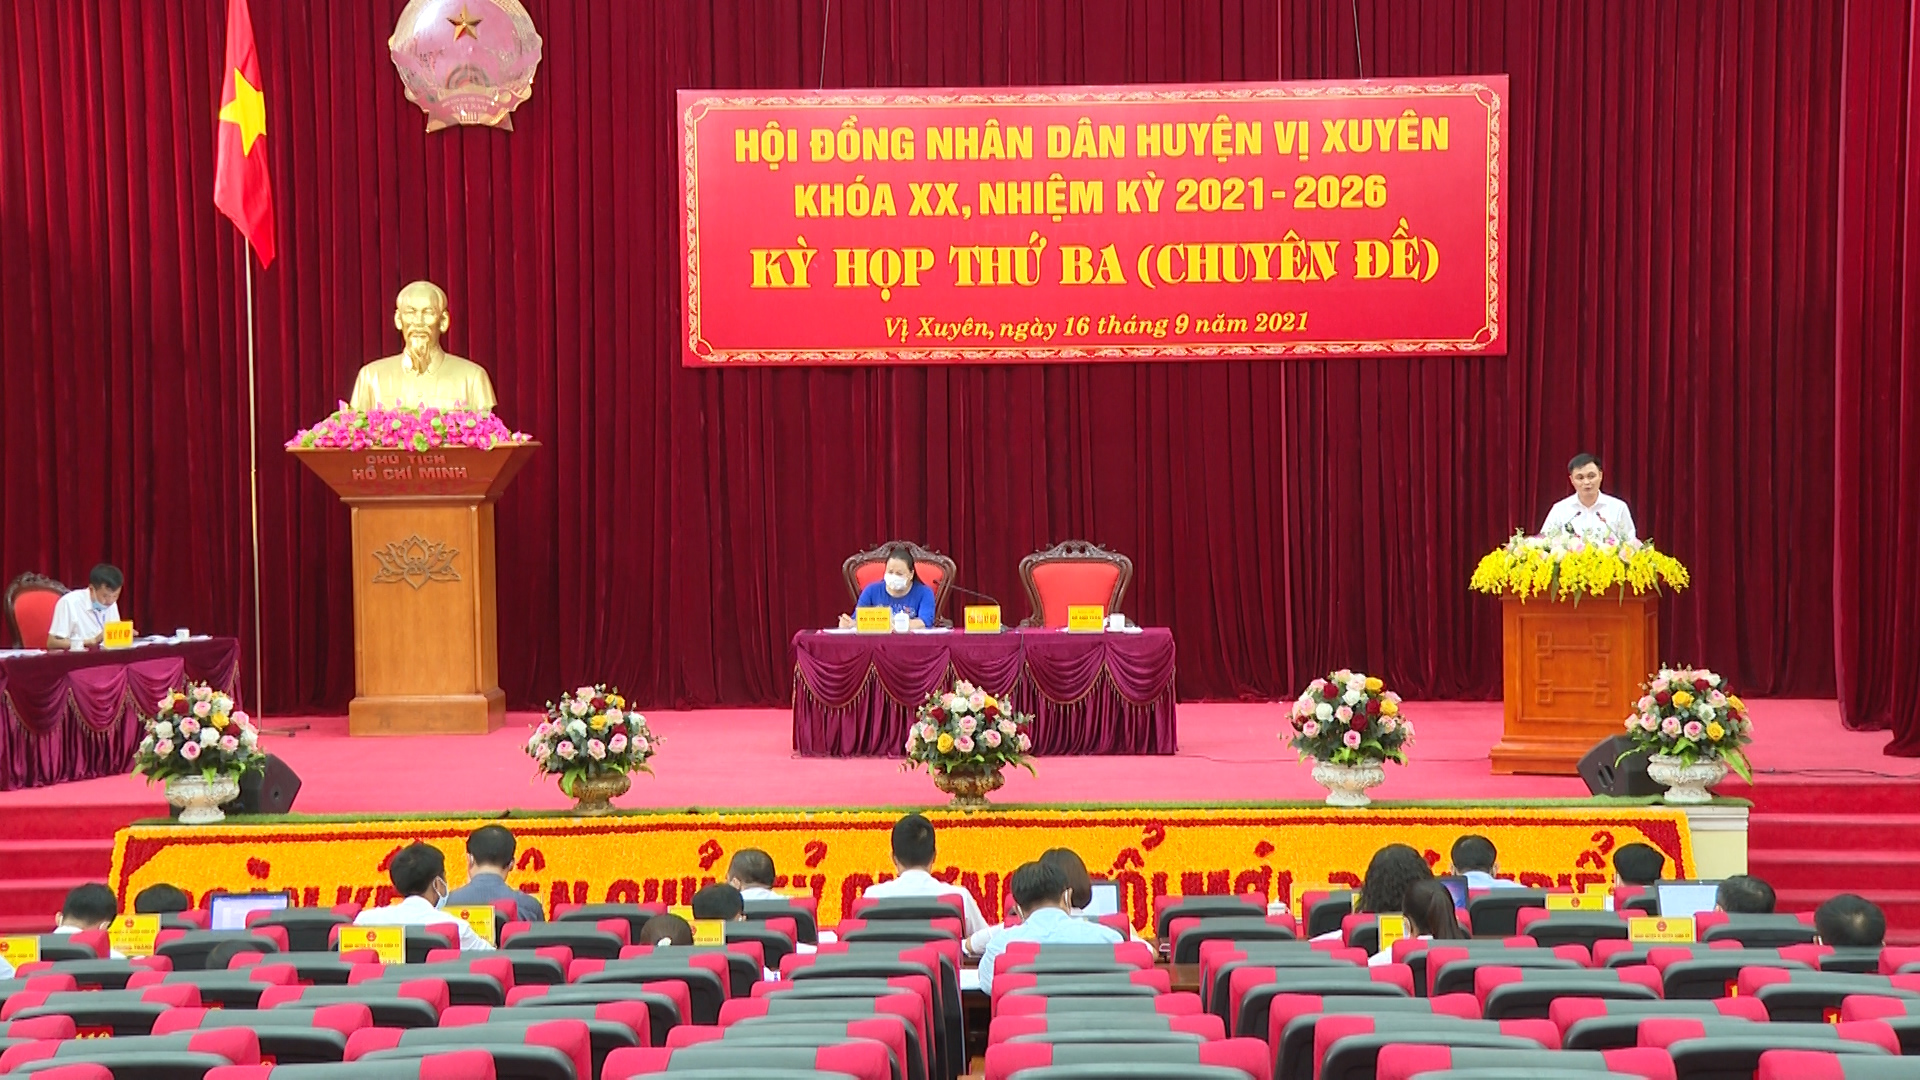 Kỳ họp thứ 3 (Chuyên đề) HĐND huyện Vị Xuyên khóa XX, nhiệm kỳ 2021 – 2026.